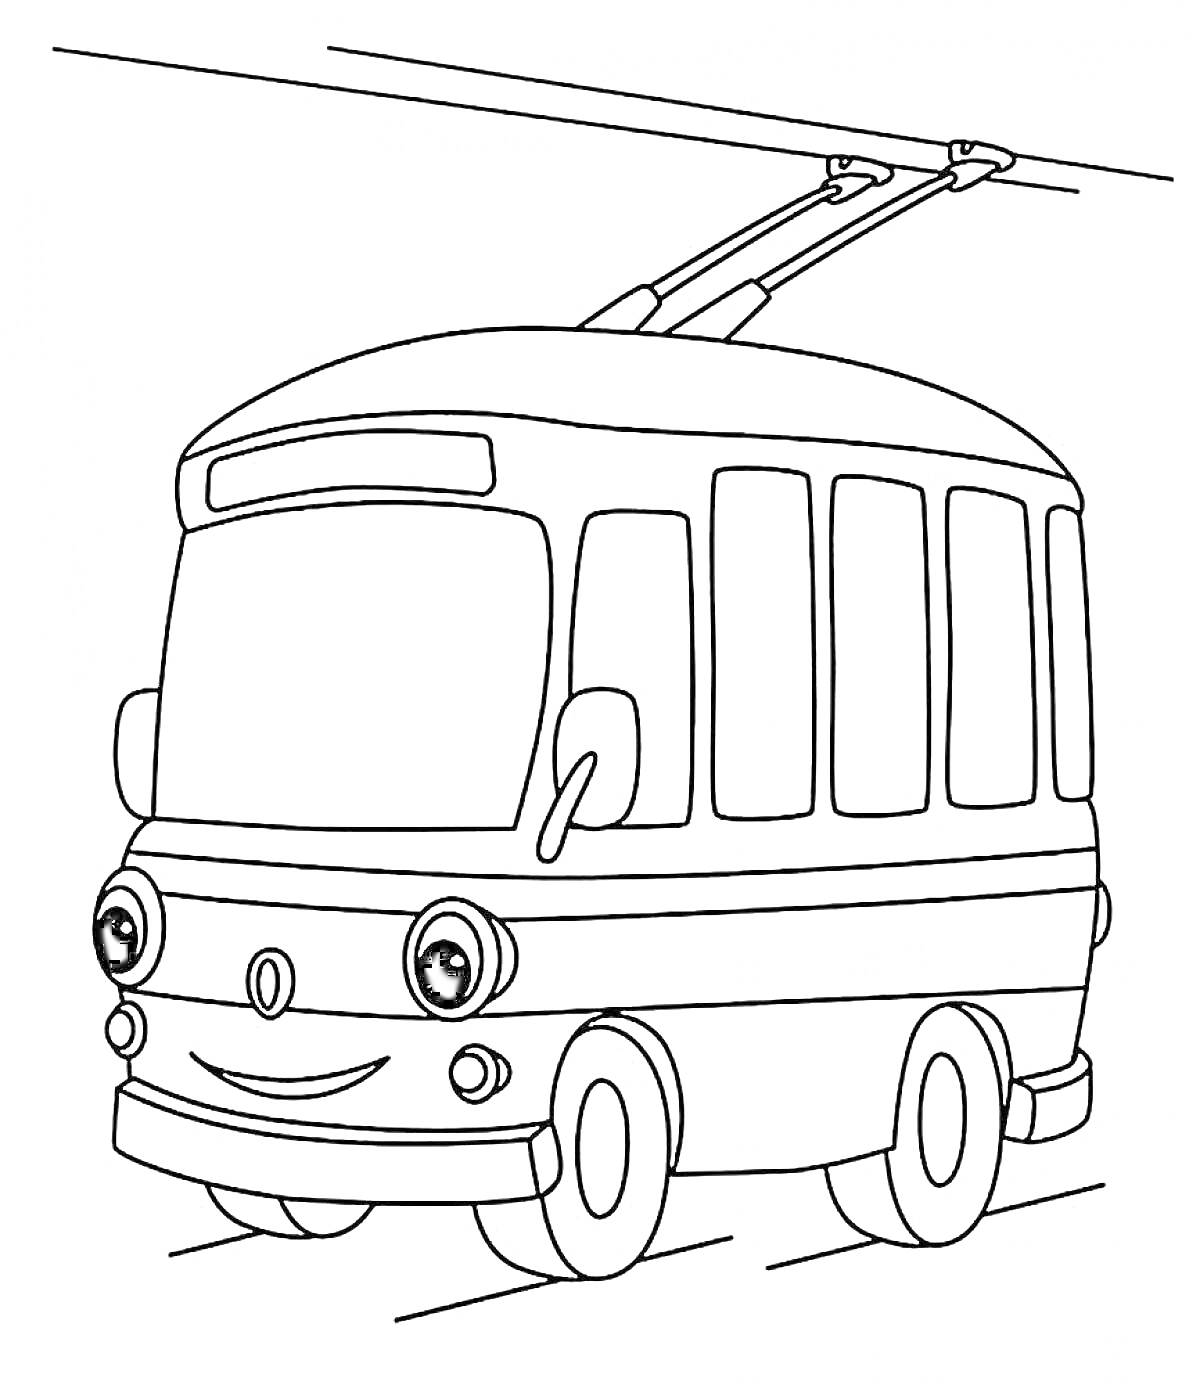 Раскраска Троллейбус с глазами и улыбкой, подключенный к проводам